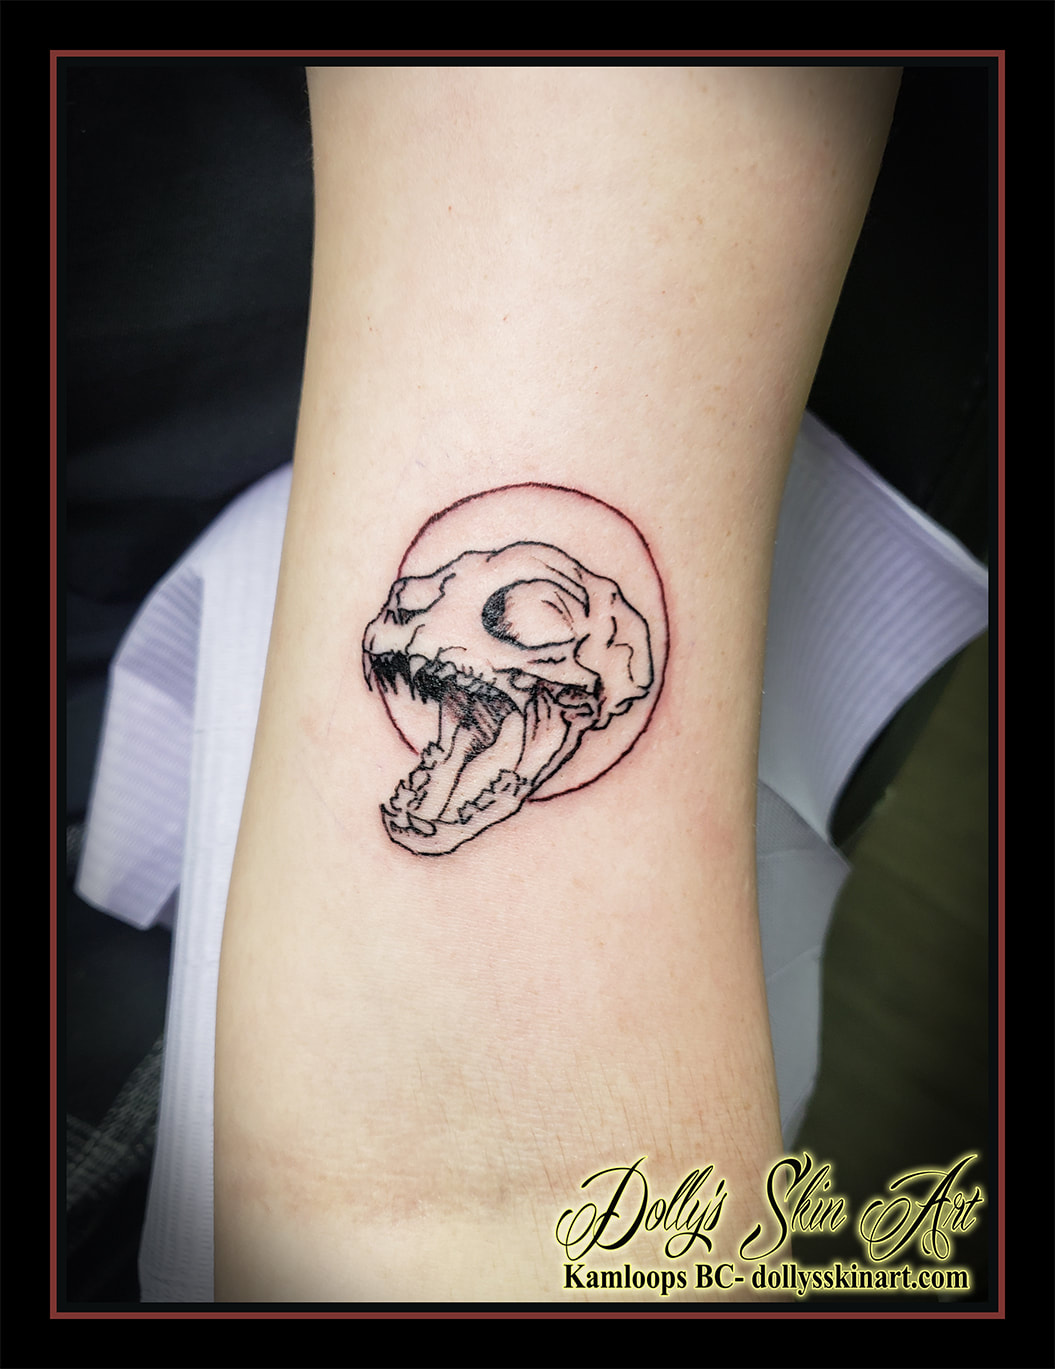 cat tattoo skull red circle black linework arm tattoo dolly's skin art kamloops